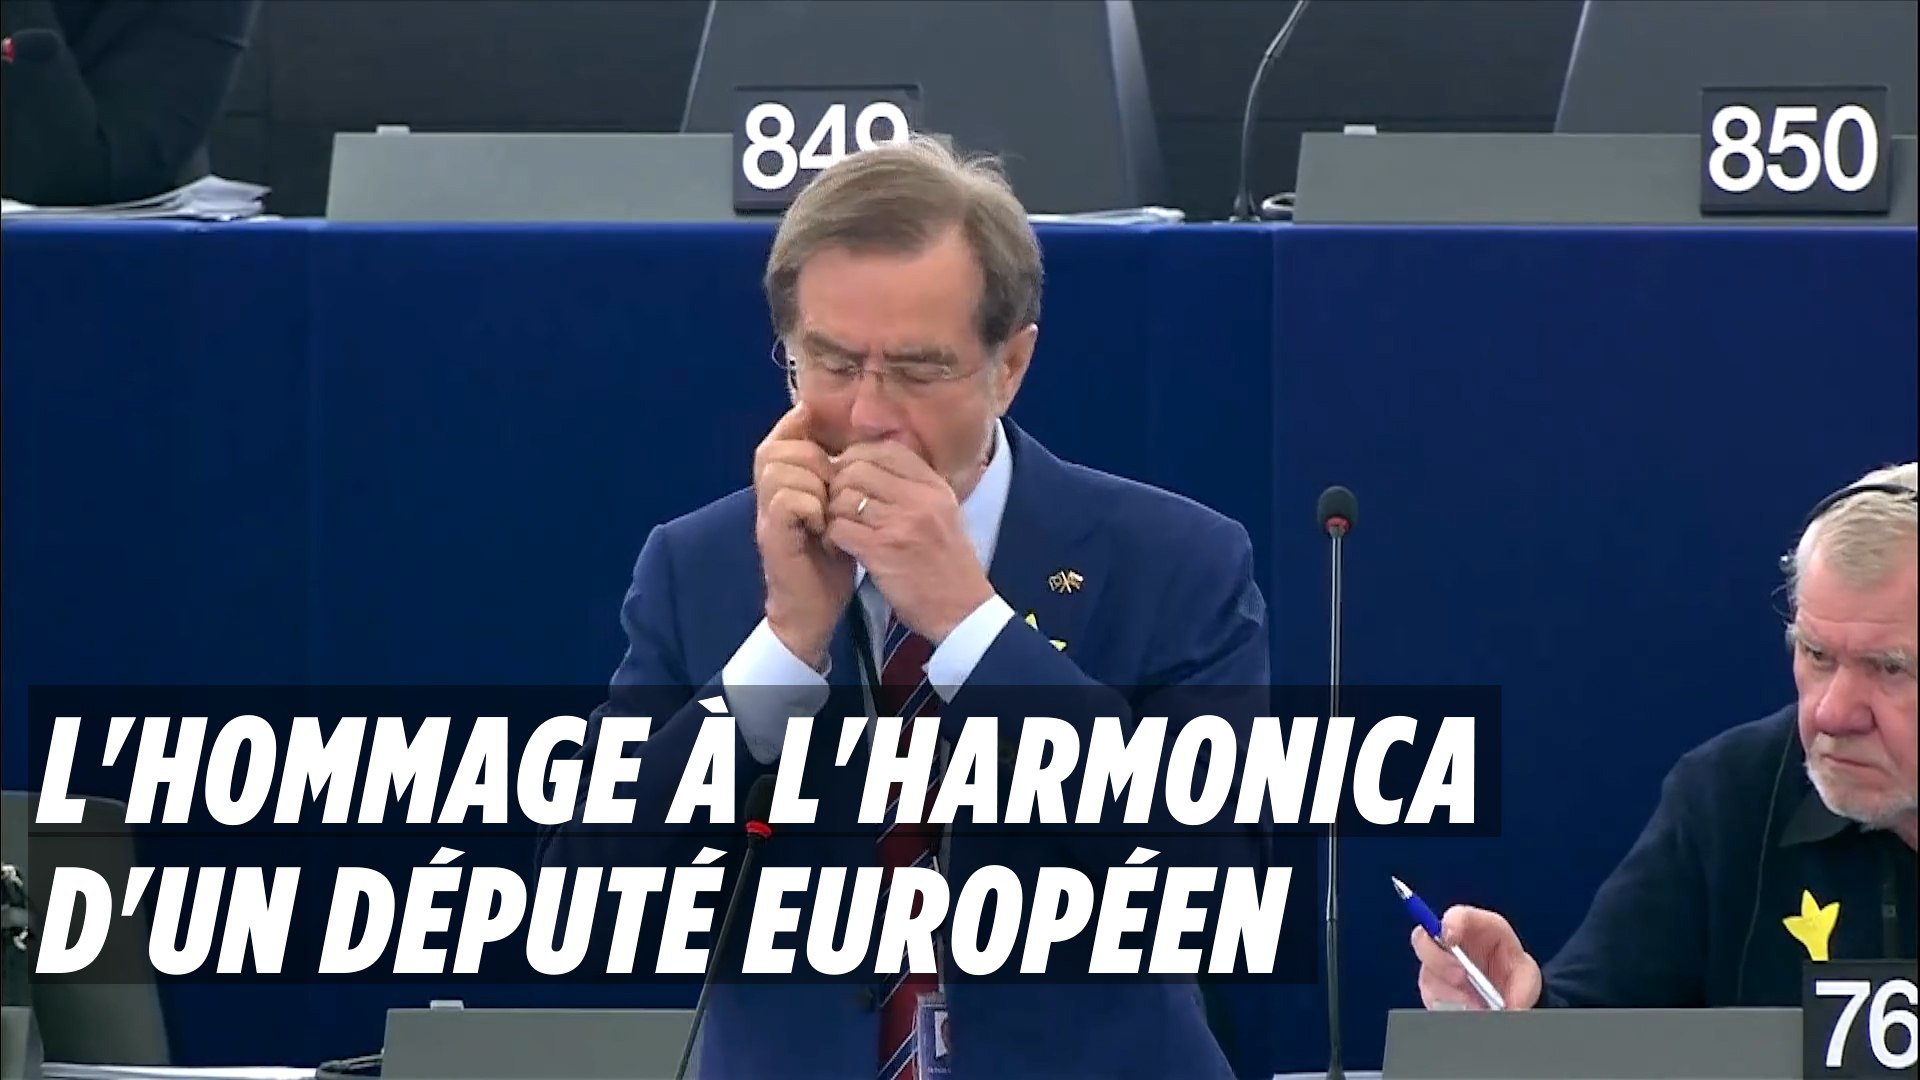 L'hommage à l'harmonica d'un député européen - Vidéo Dailymotion